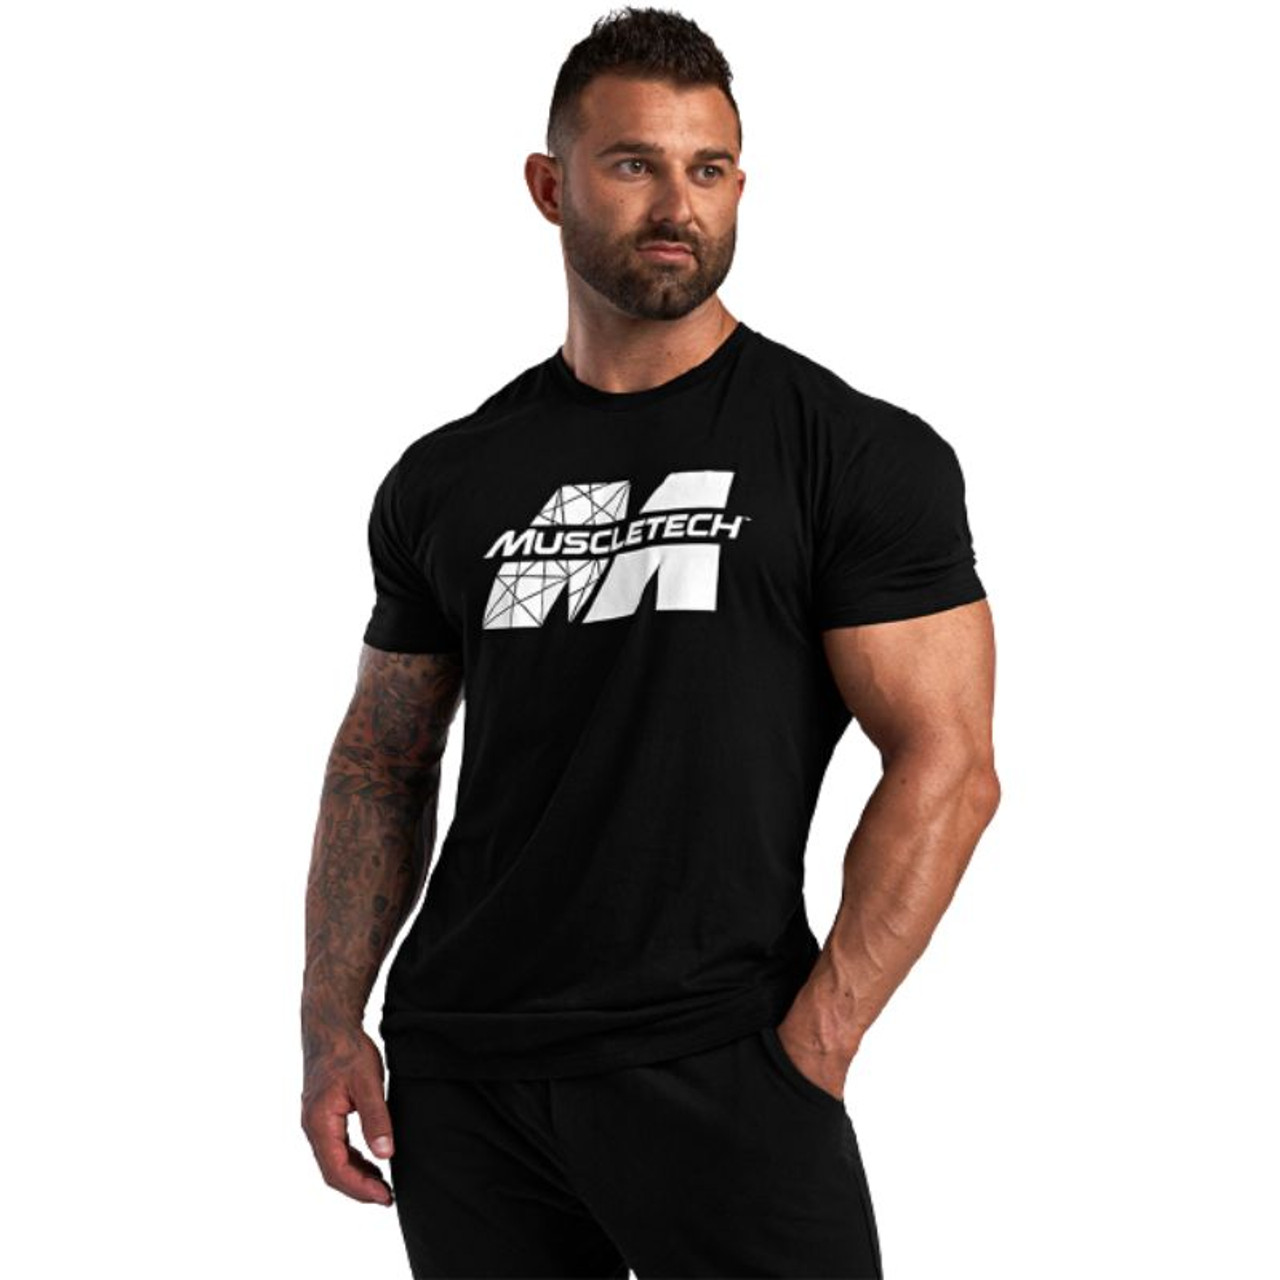 Muscletech Men's T-Shirt - Black